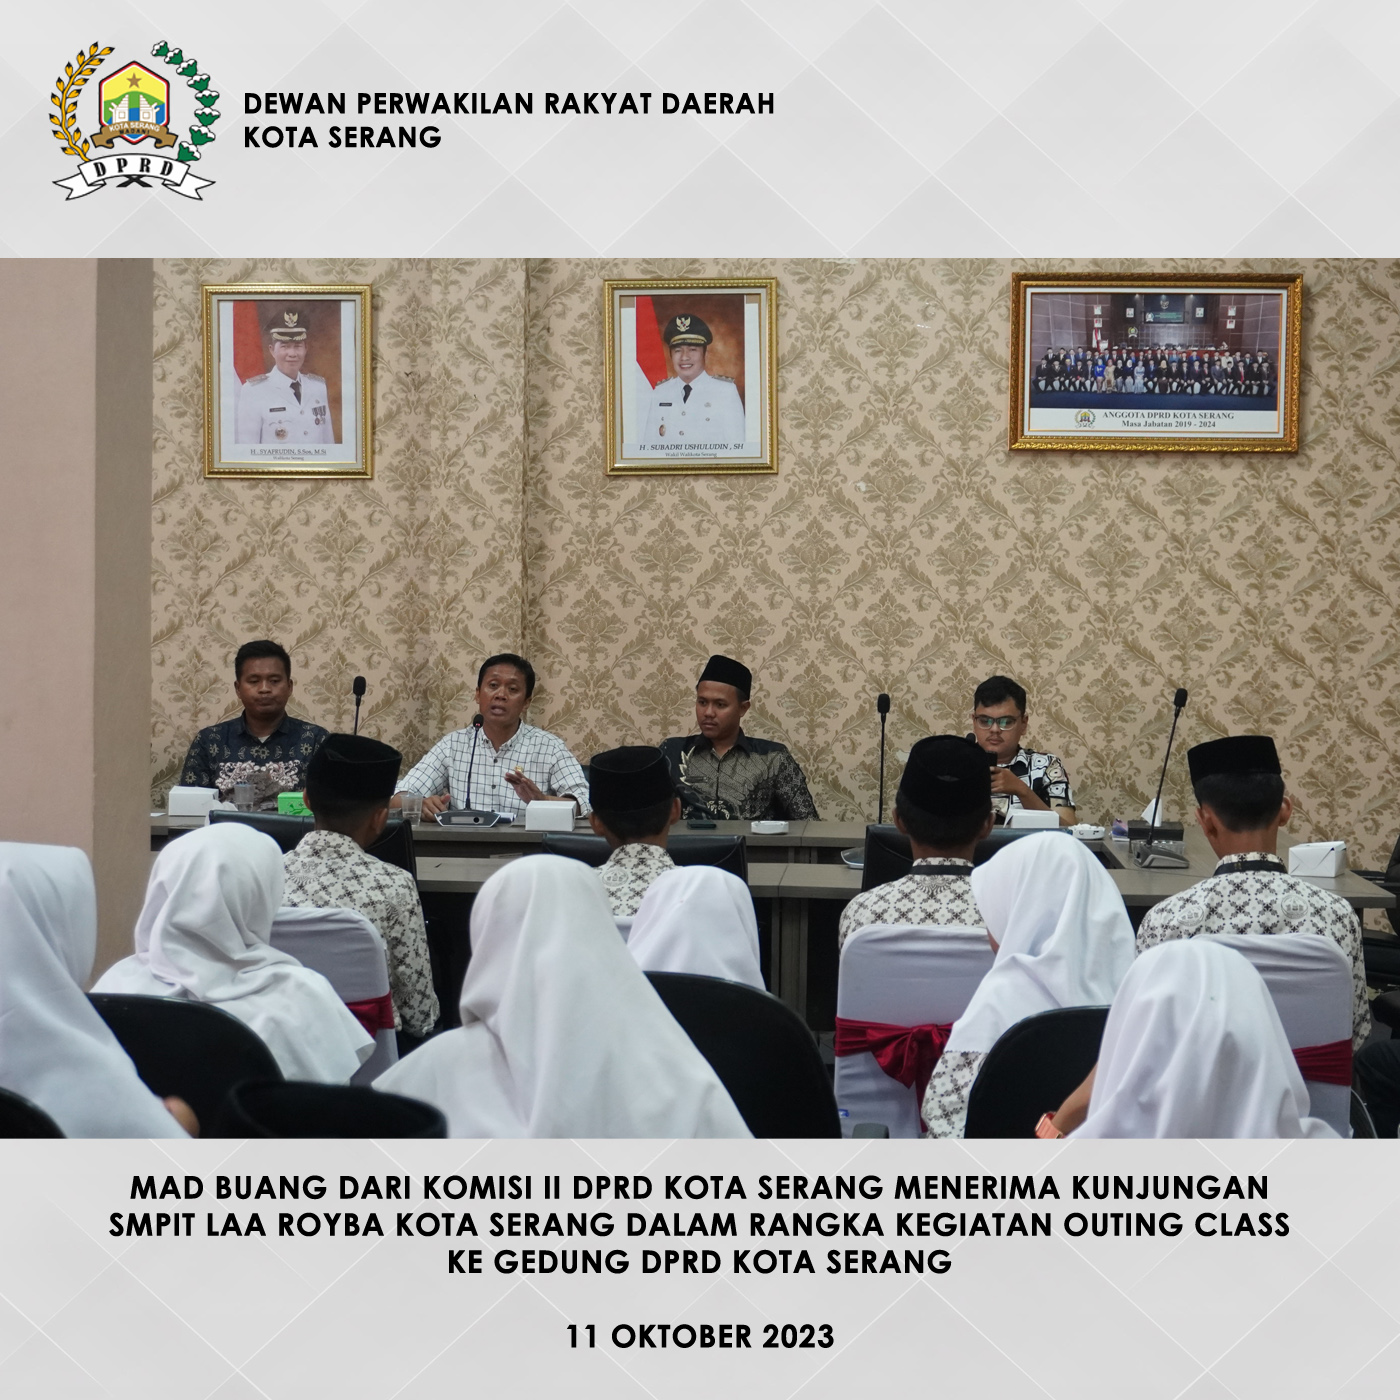 11 Oktober 2023 - Komisi II DPRD Kota Serang terima SMPIT Laa Royba Kota Serang sebagai bagian dari kegiatan Outing Class ke Gedung DPRD Kota Serang